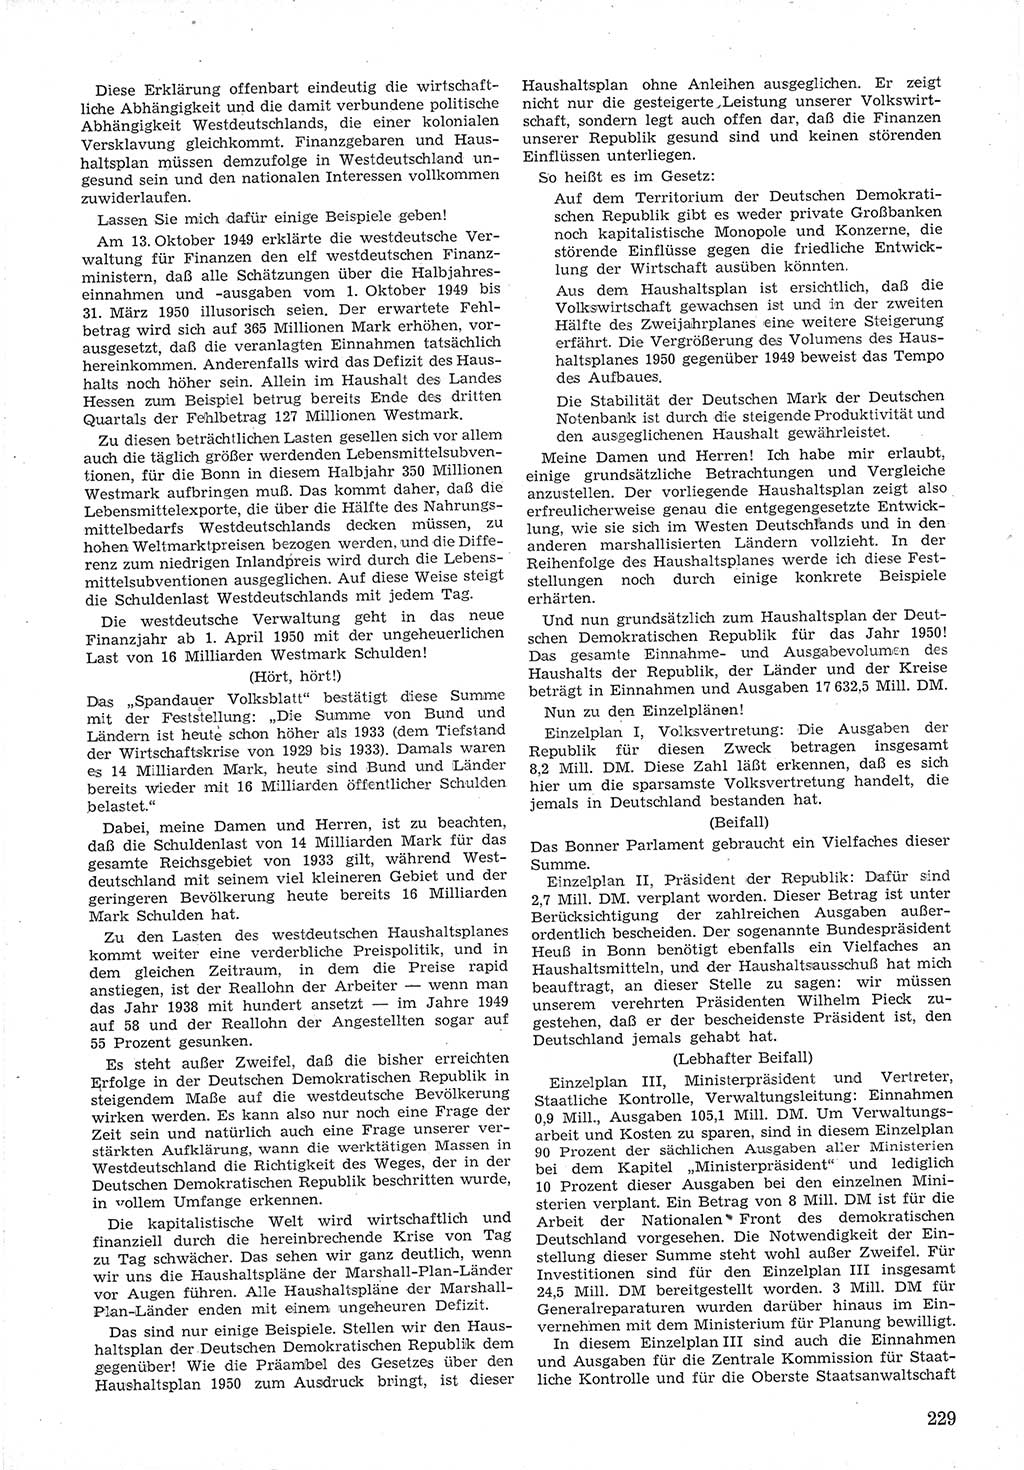 Provisorische Volkskammer (VK) der Deutschen Demokratischen Republik (DDR) 1949-1950, Dokument 243 (Prov. VK DDR 1949-1950, Dok. 243)